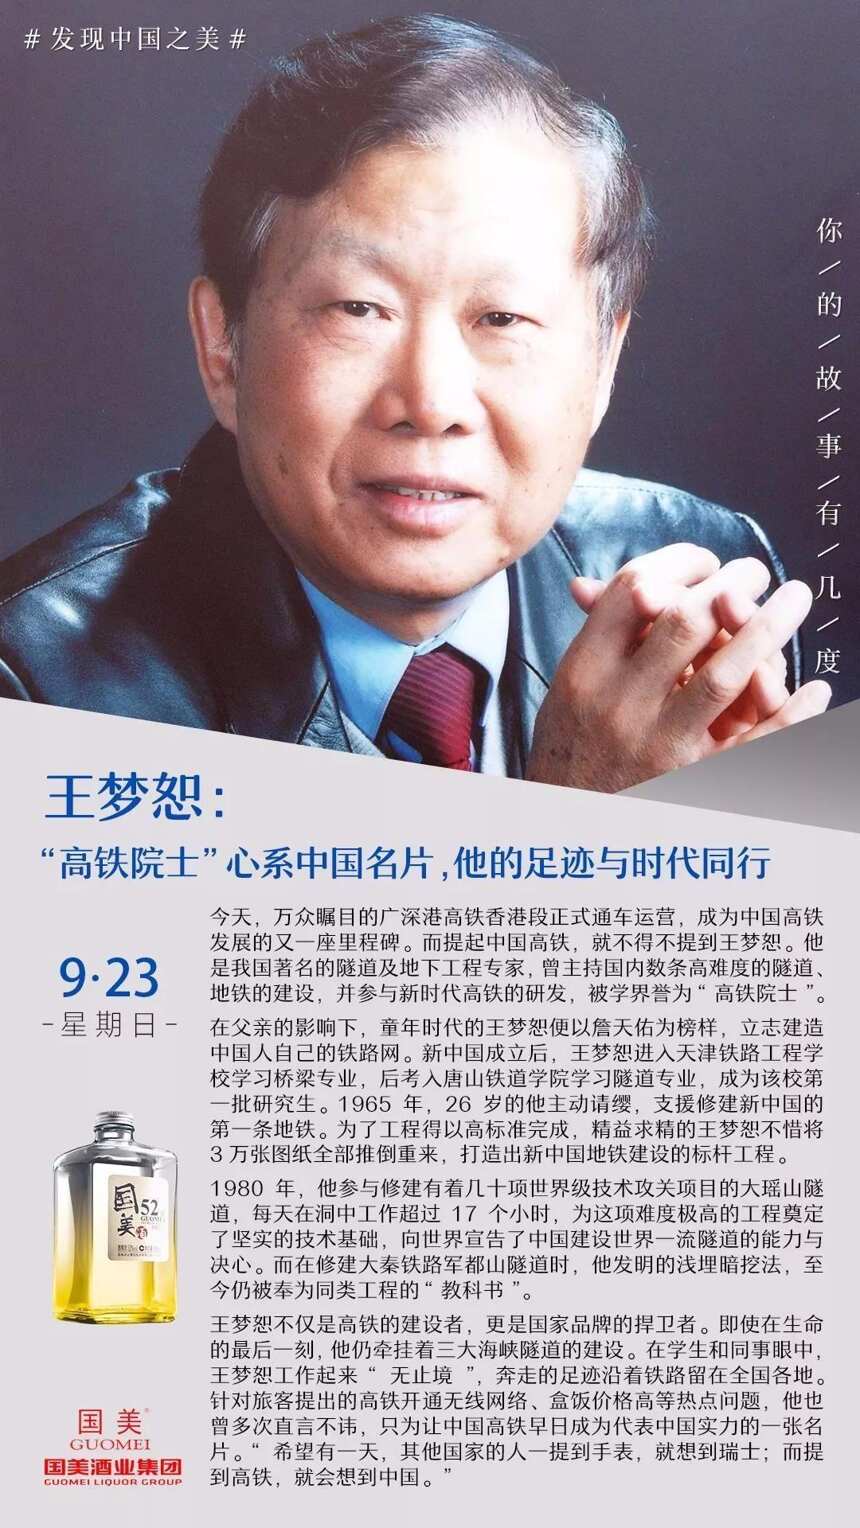 王梦恕：“高铁院士”心系中国名片，他的足迹与时代同行